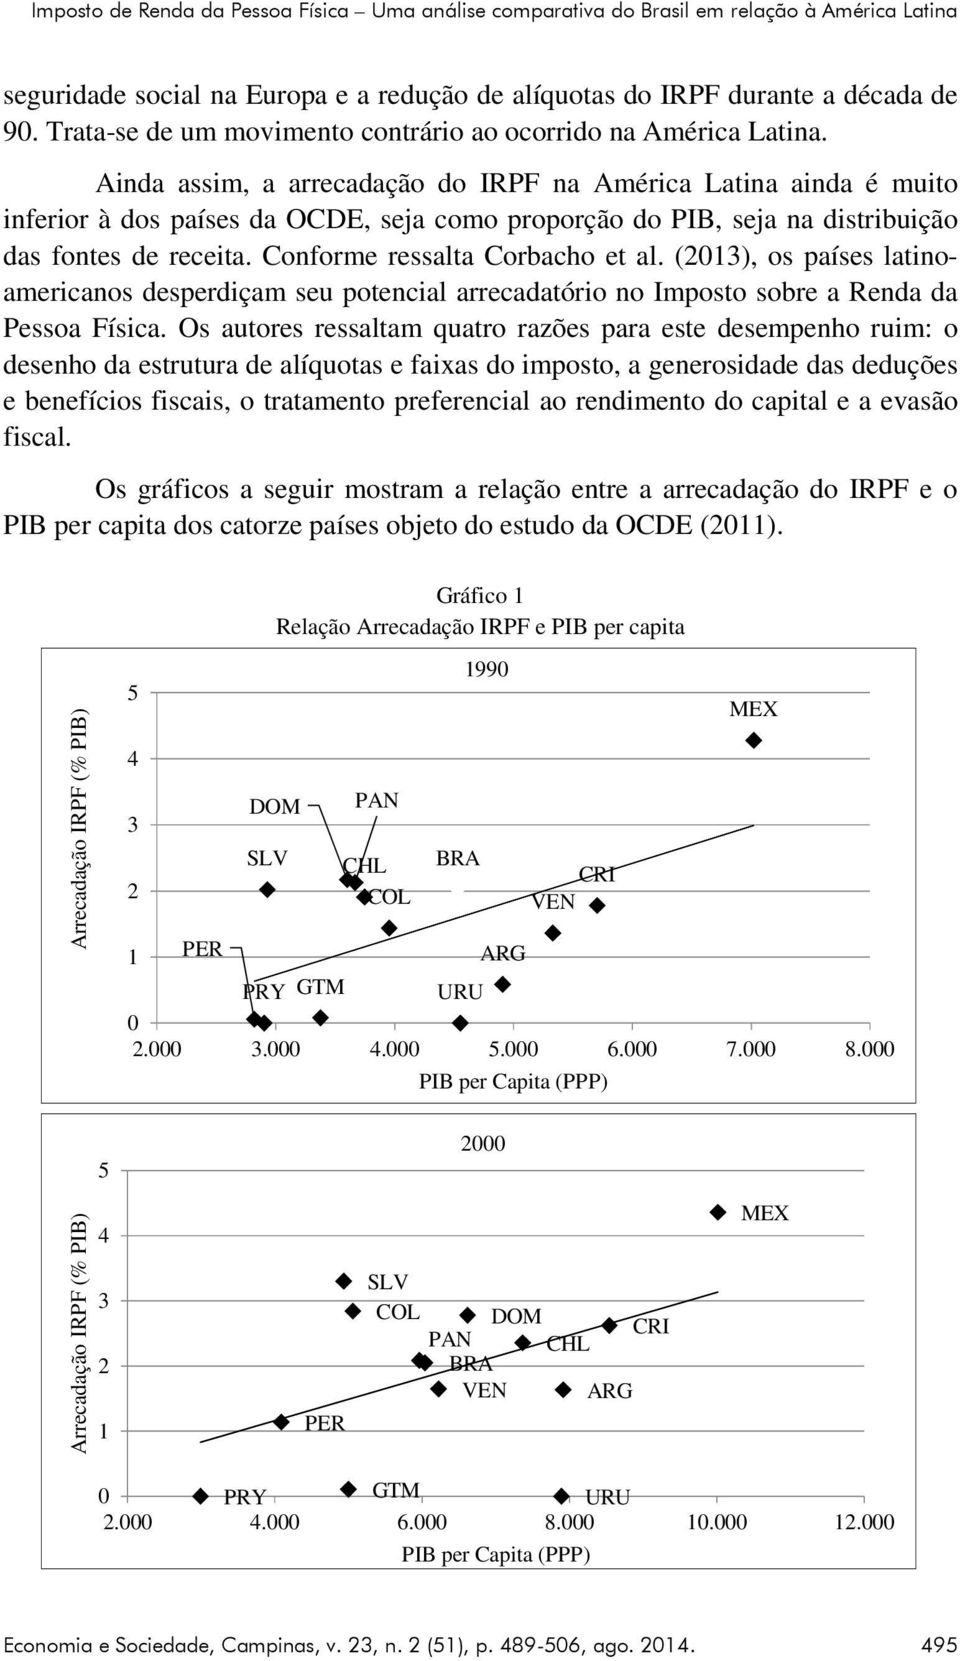 Ainda assim, a arrecadação do IRPF na América Latina ainda é muito inferior à dos países da OCDE, seja como proporção do PIB, seja na distribuição das fontes de receita.